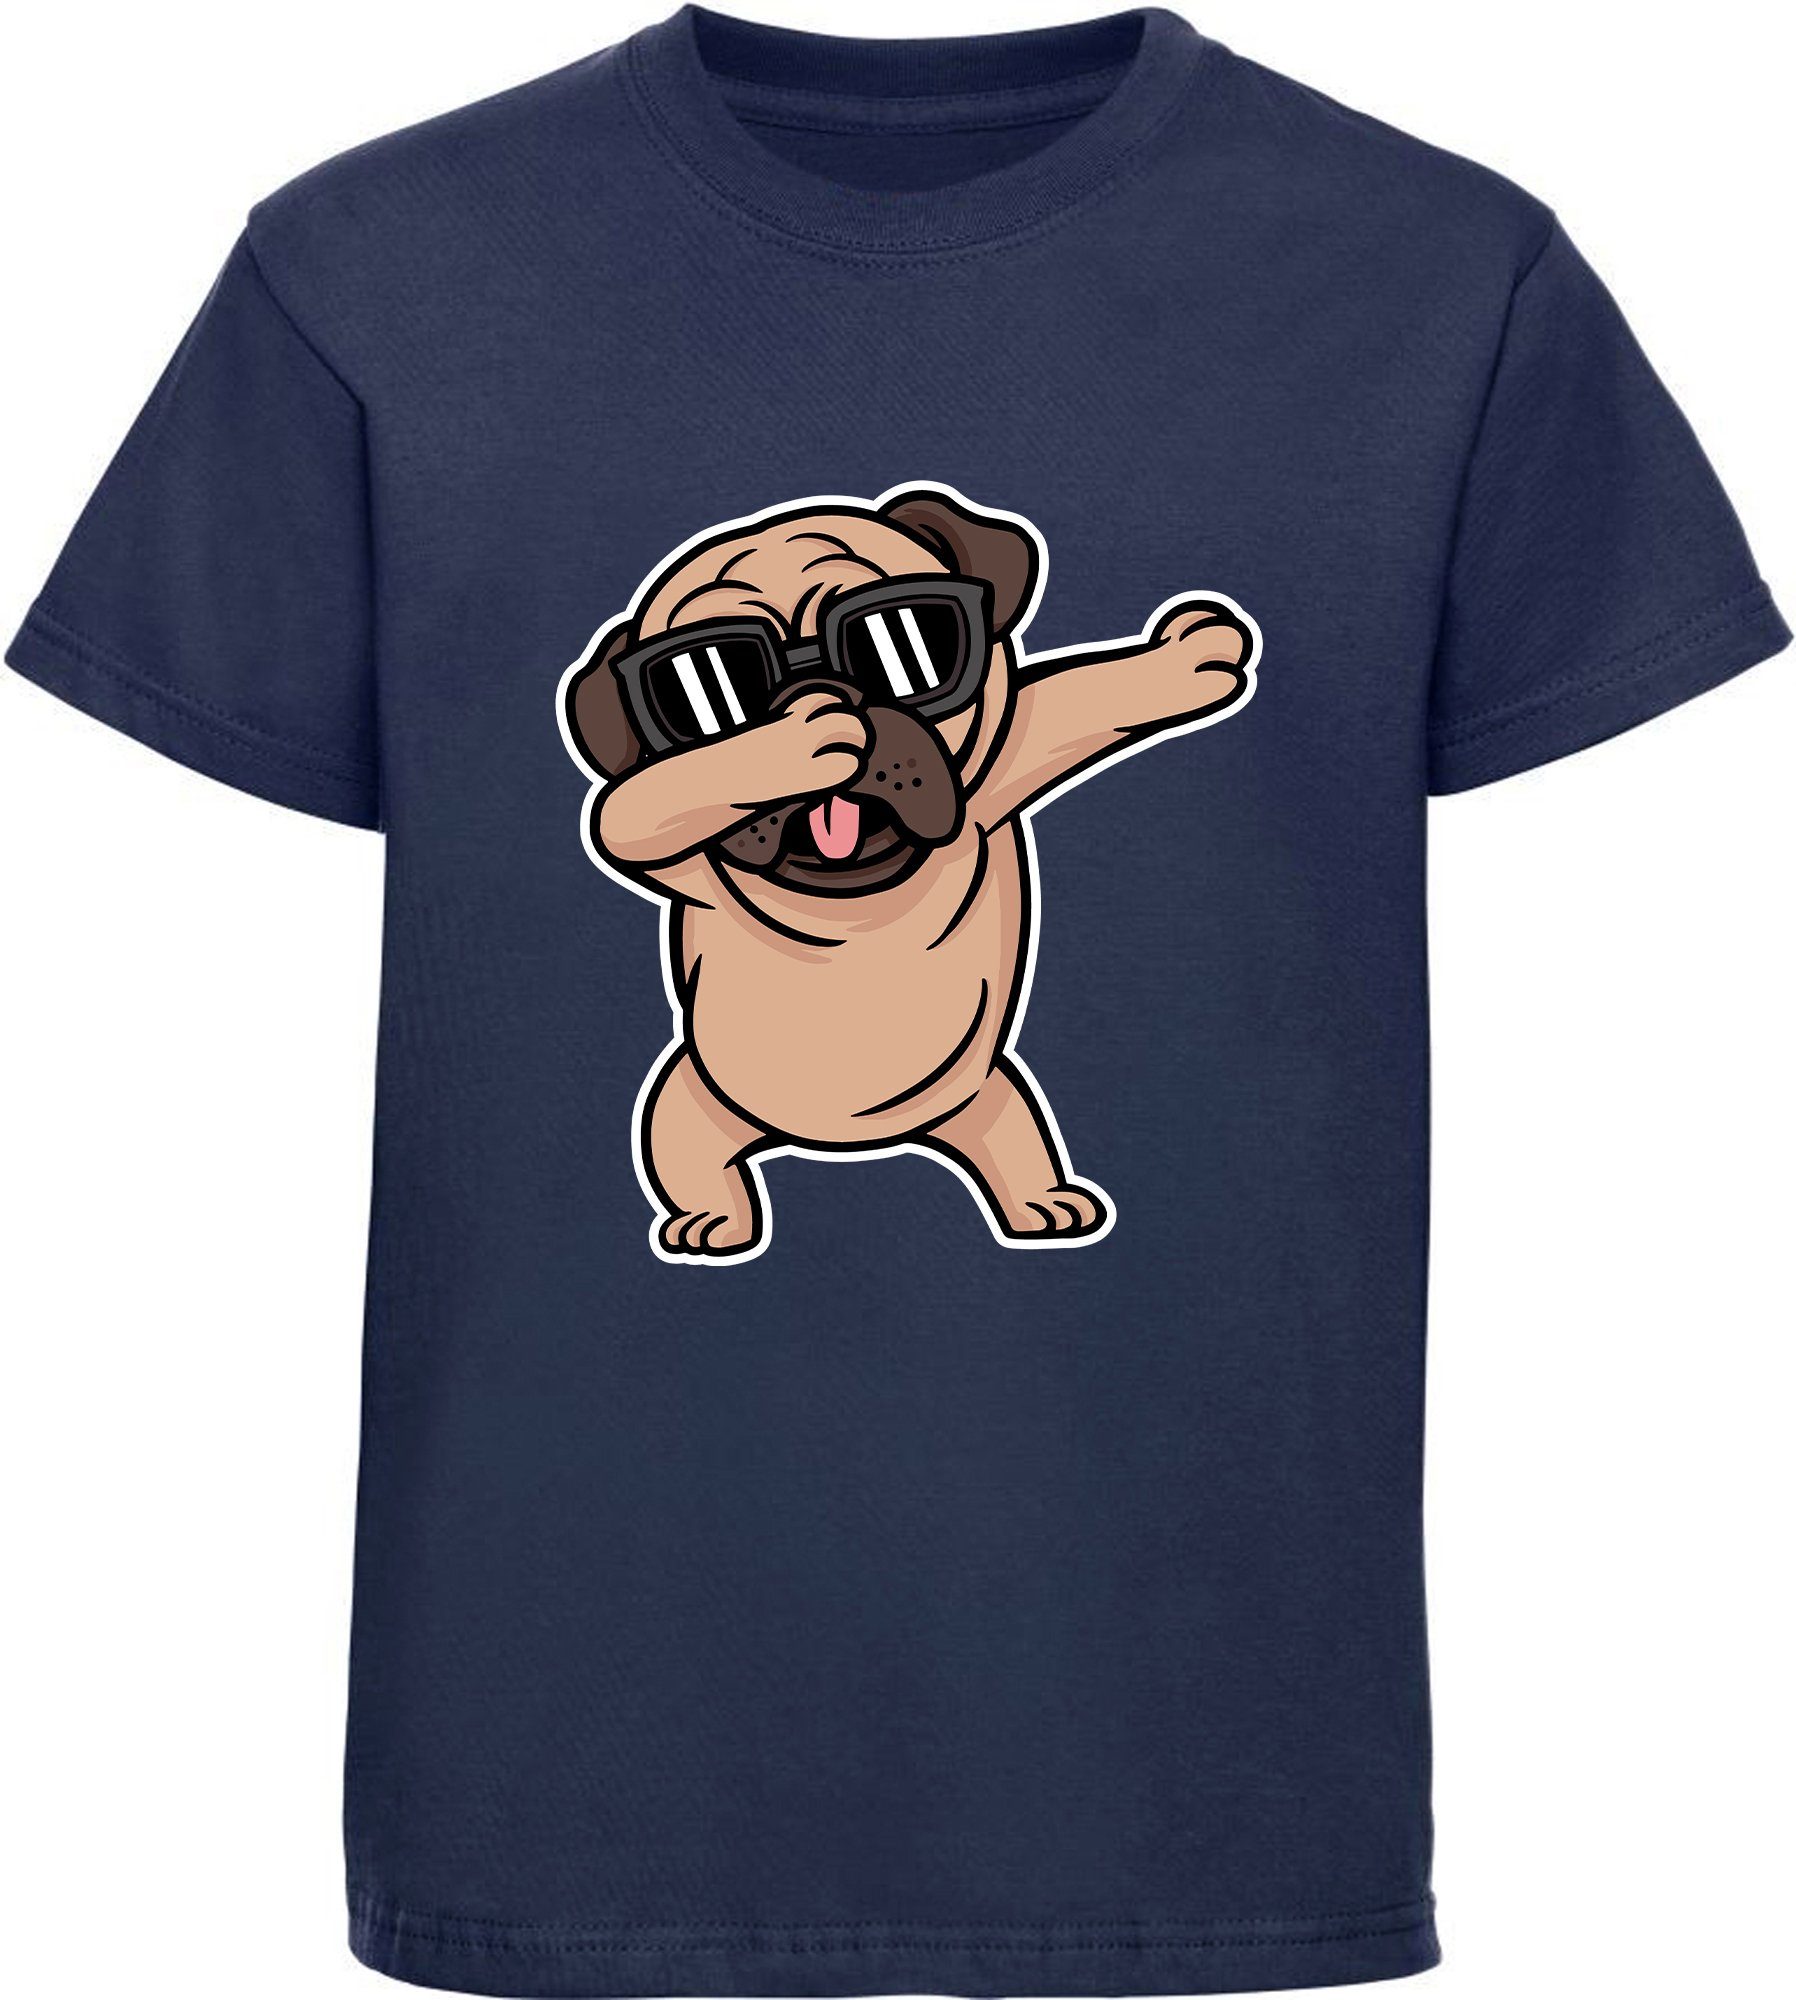 MyDesign24 Print-Shirt Kinder Hunde T-Shirt bedruckt - Cooler Hund mit Skateboard Baumwollshirt mit Aufdruck, i239 navy blau